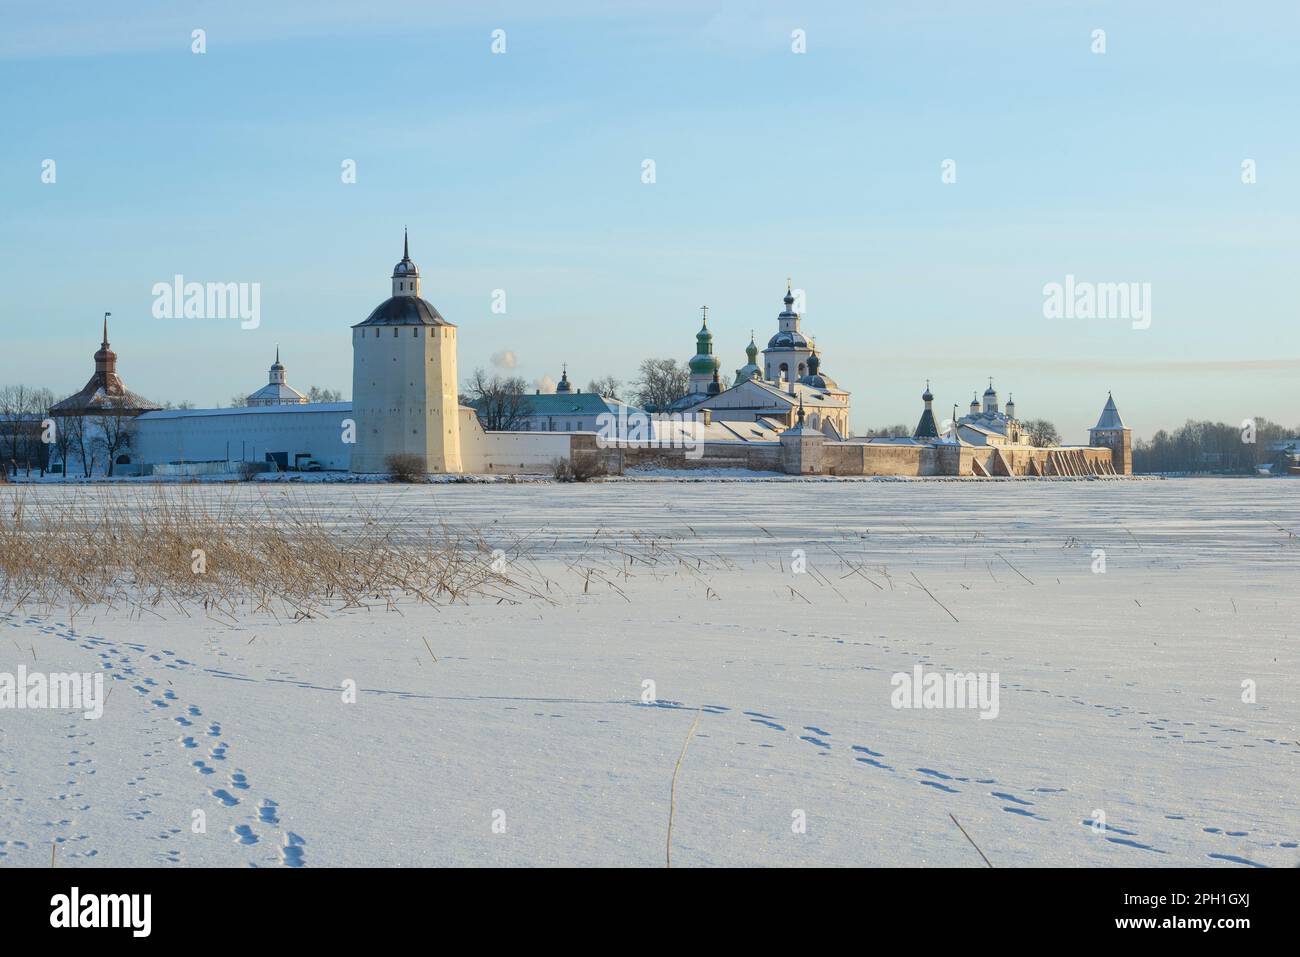 Antico monastero di Kirillo-Belozersky in un paesaggio invernale in una giornata gelida di dicembre. Kirillov. Regione di Vologda, Russia Foto Stock